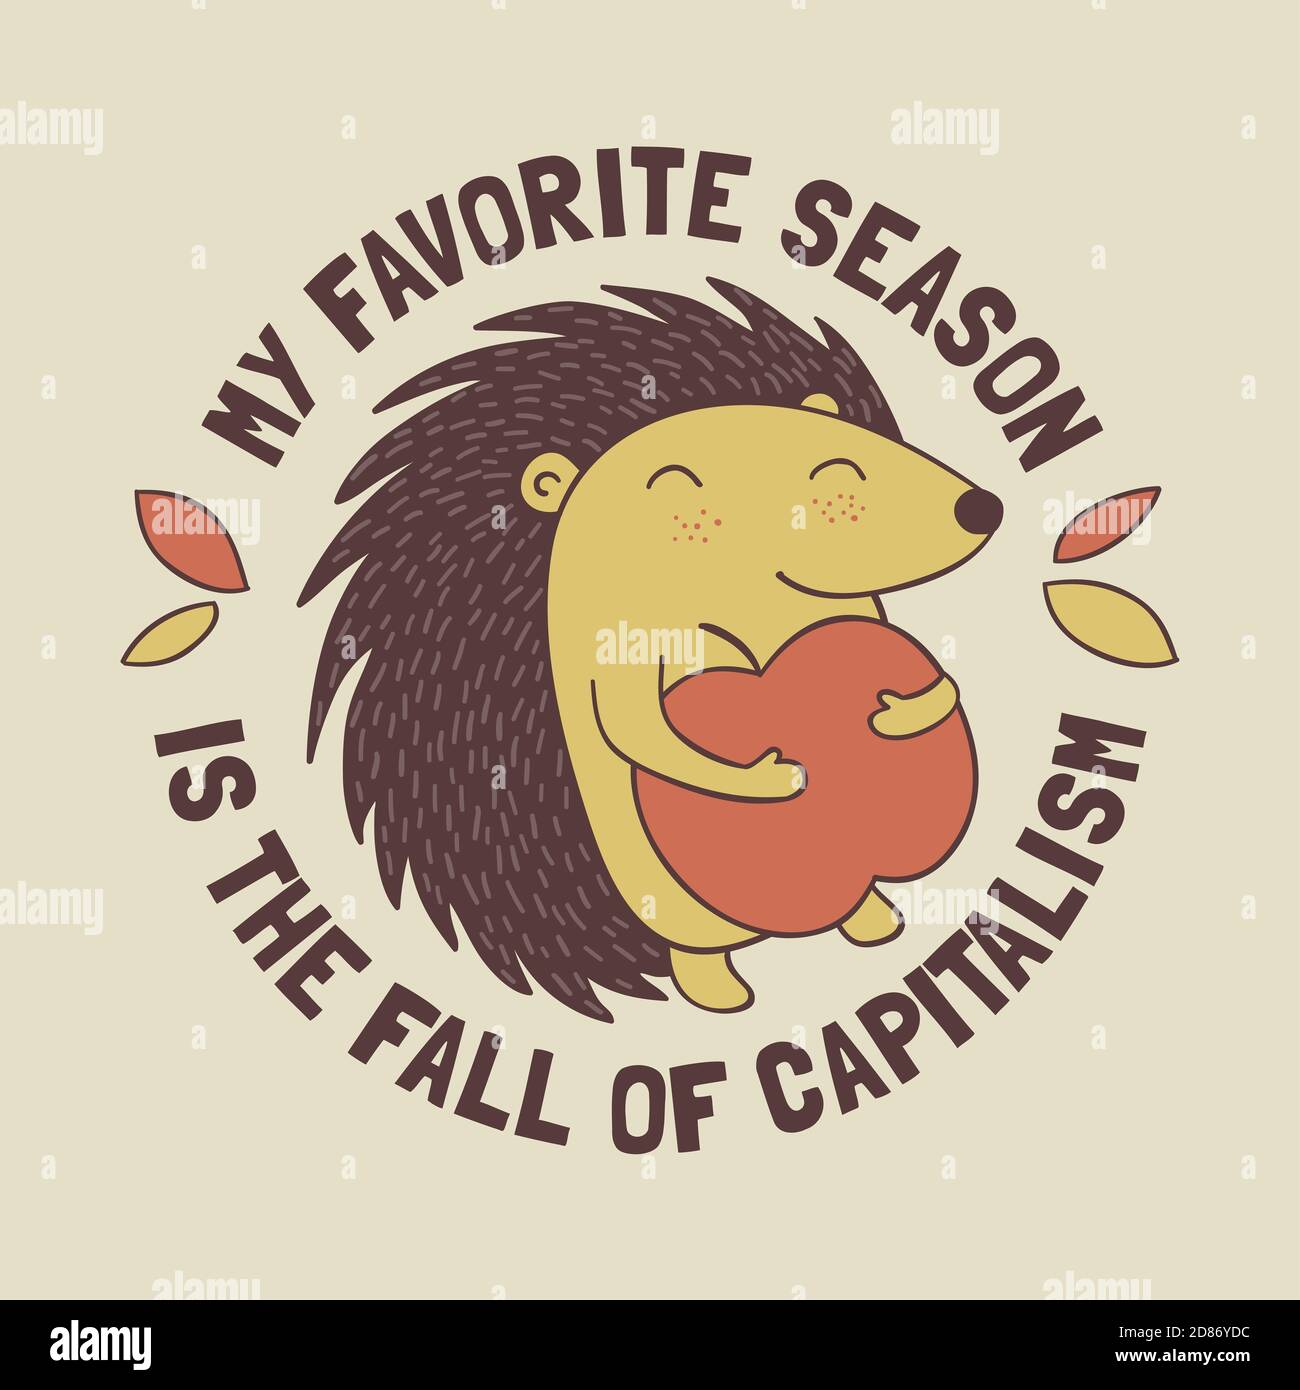 Lindo hedgehog de dibujos animados sosteniendo una manzana con el mensaje anticapitalista Mi temporada favorita es la caída del capitalismo. Ilustración divertida y radical. Foto de stock